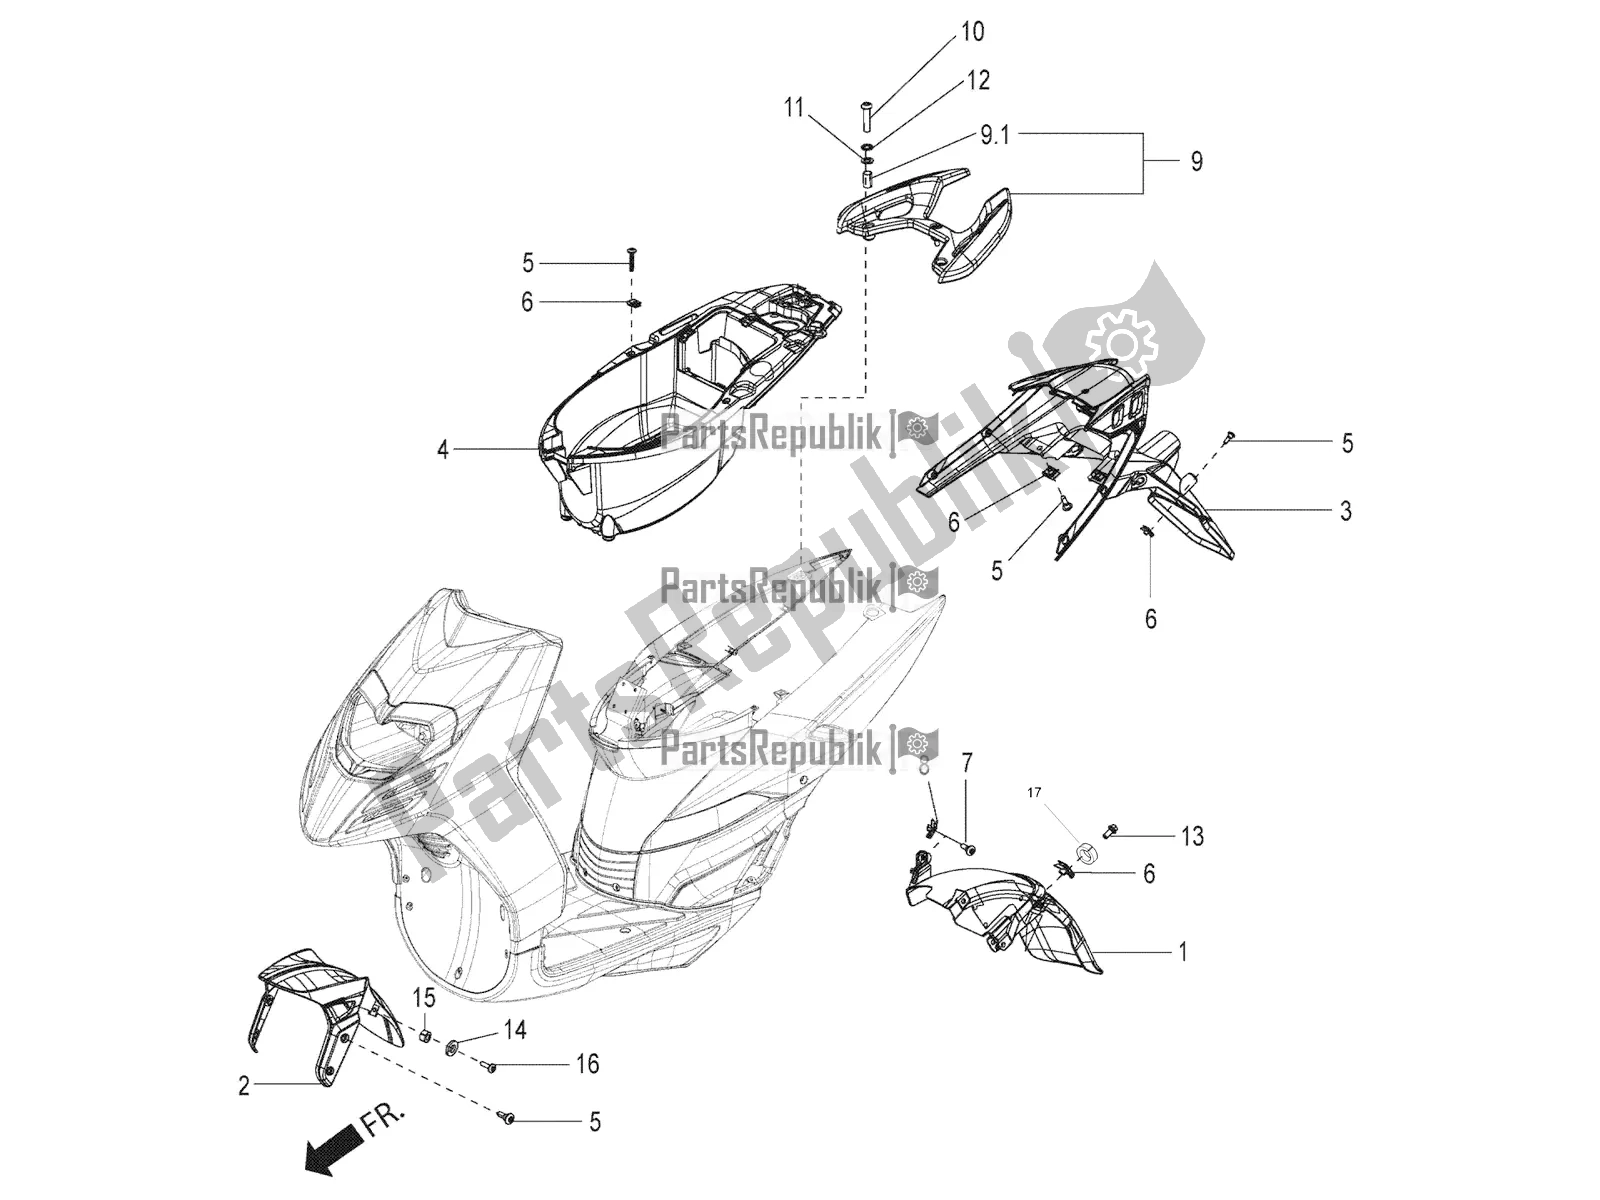 Toutes les pièces pour le Mudguard And Helmet Case du Aprilia SR Motard 150 ABS Racer Carb. Latam 2018